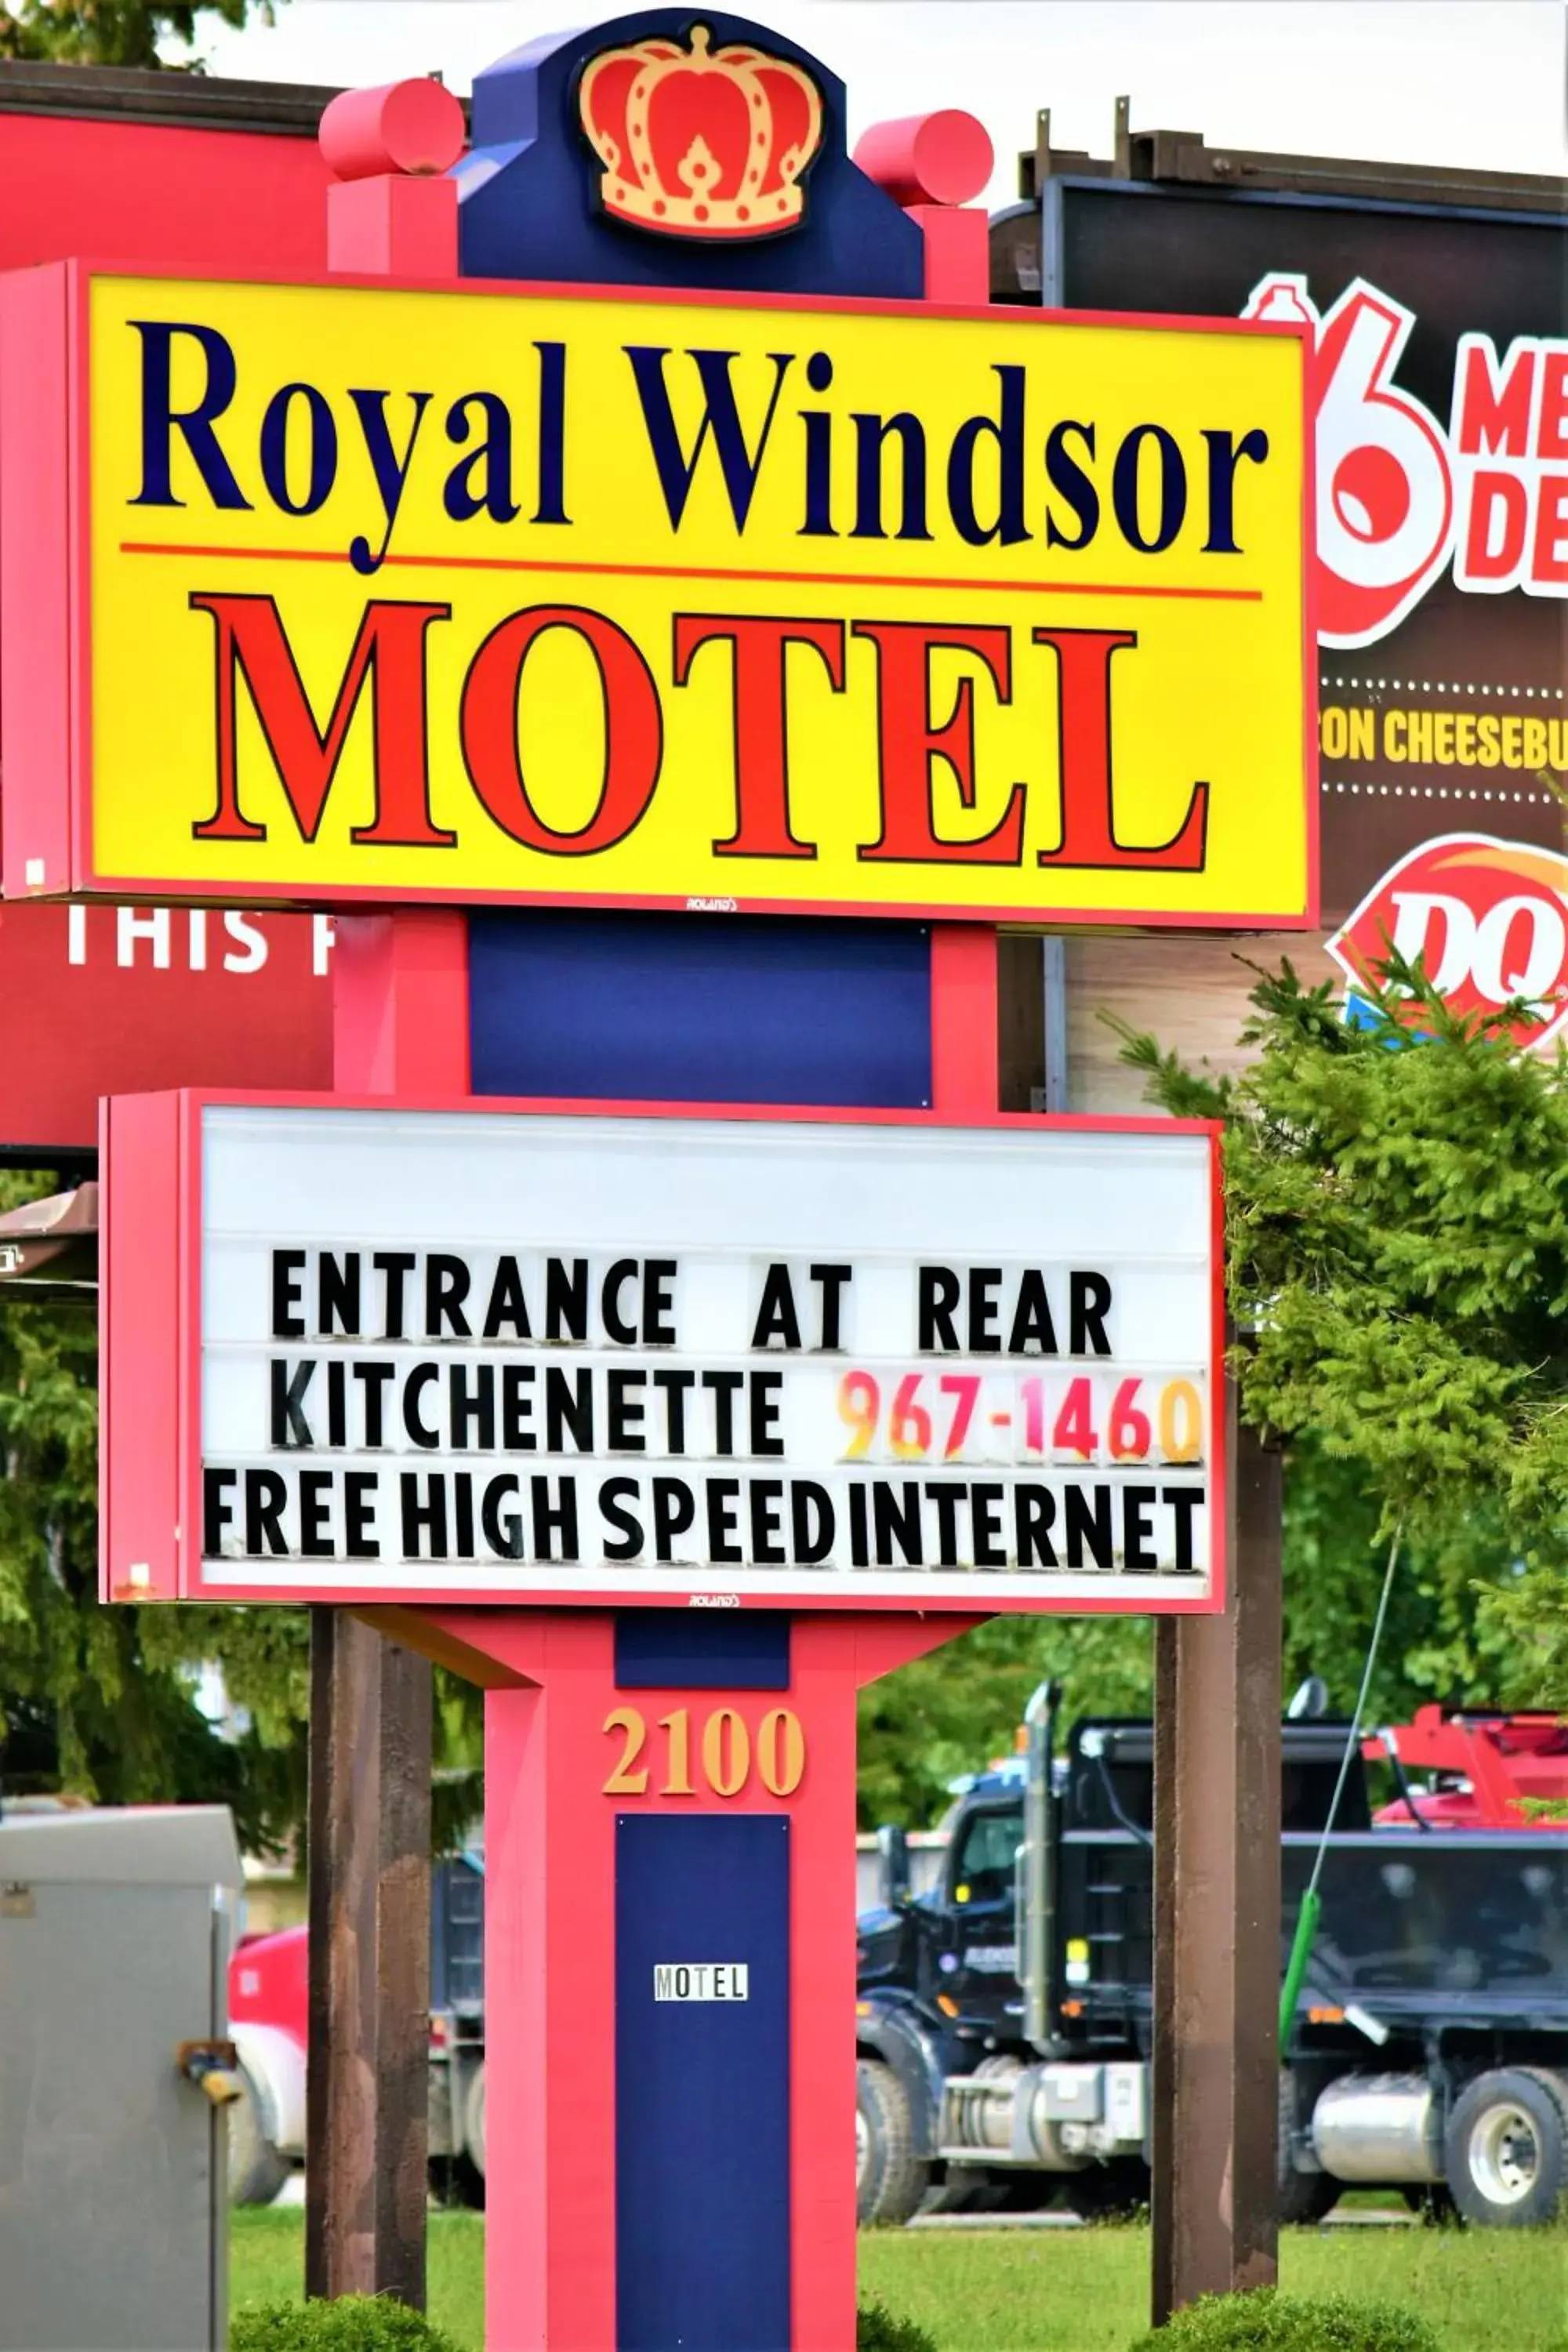 Royal Windsor Motel